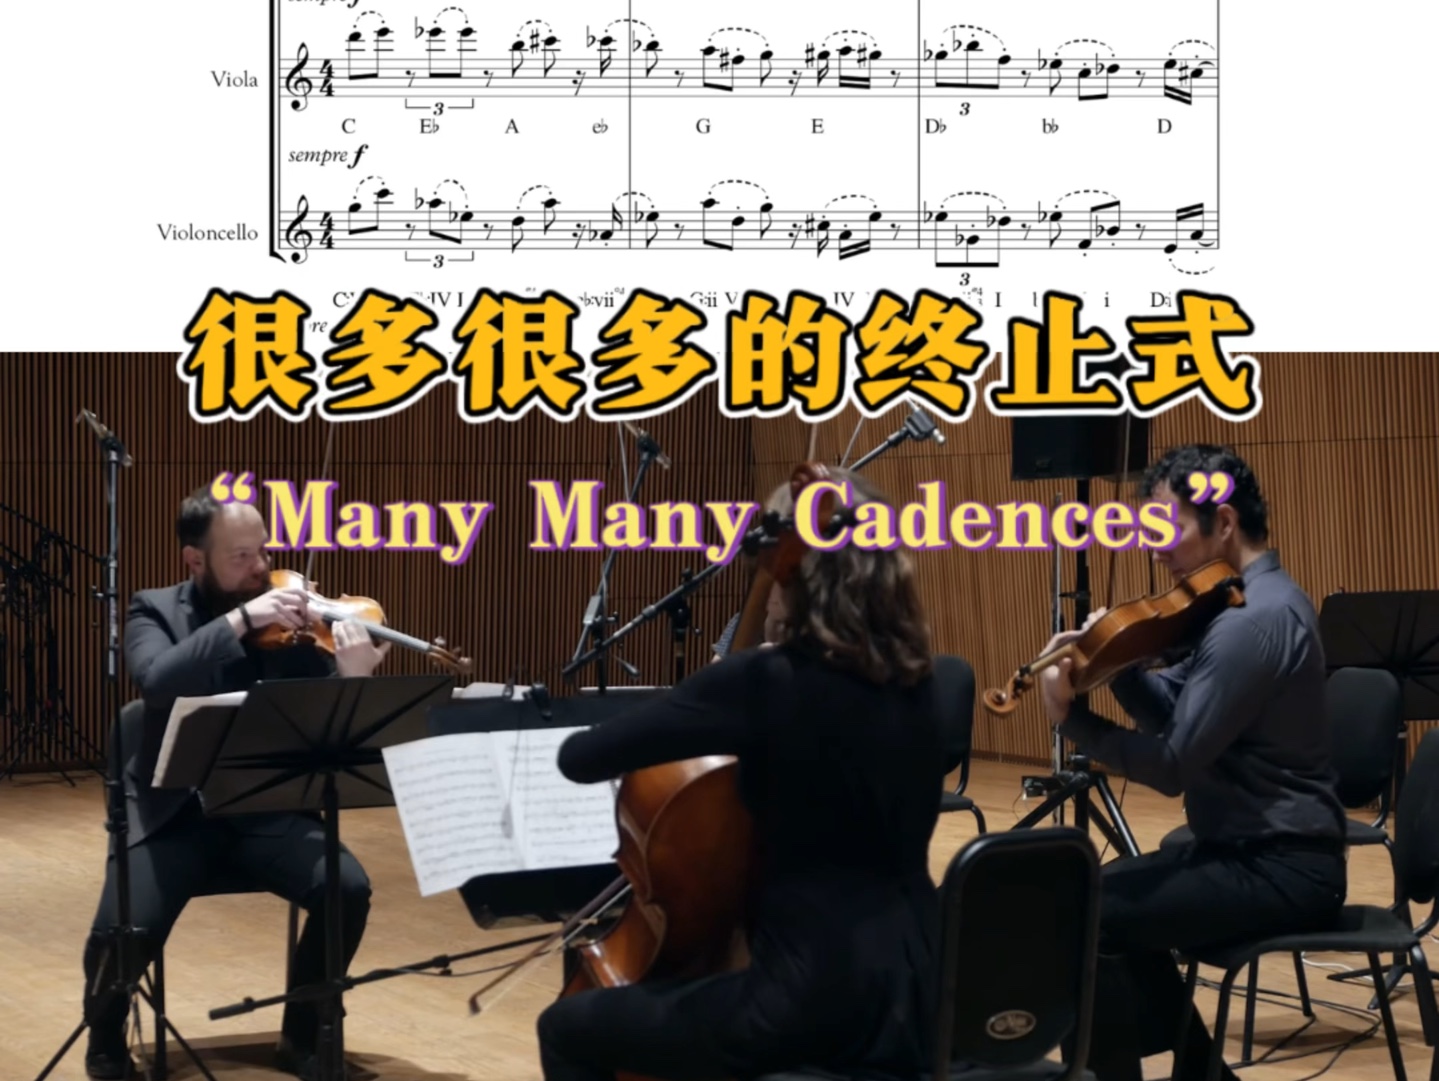 【自制视频乐谱】弦乐四重奏：很多很多的终止式“Many Many Cadences”